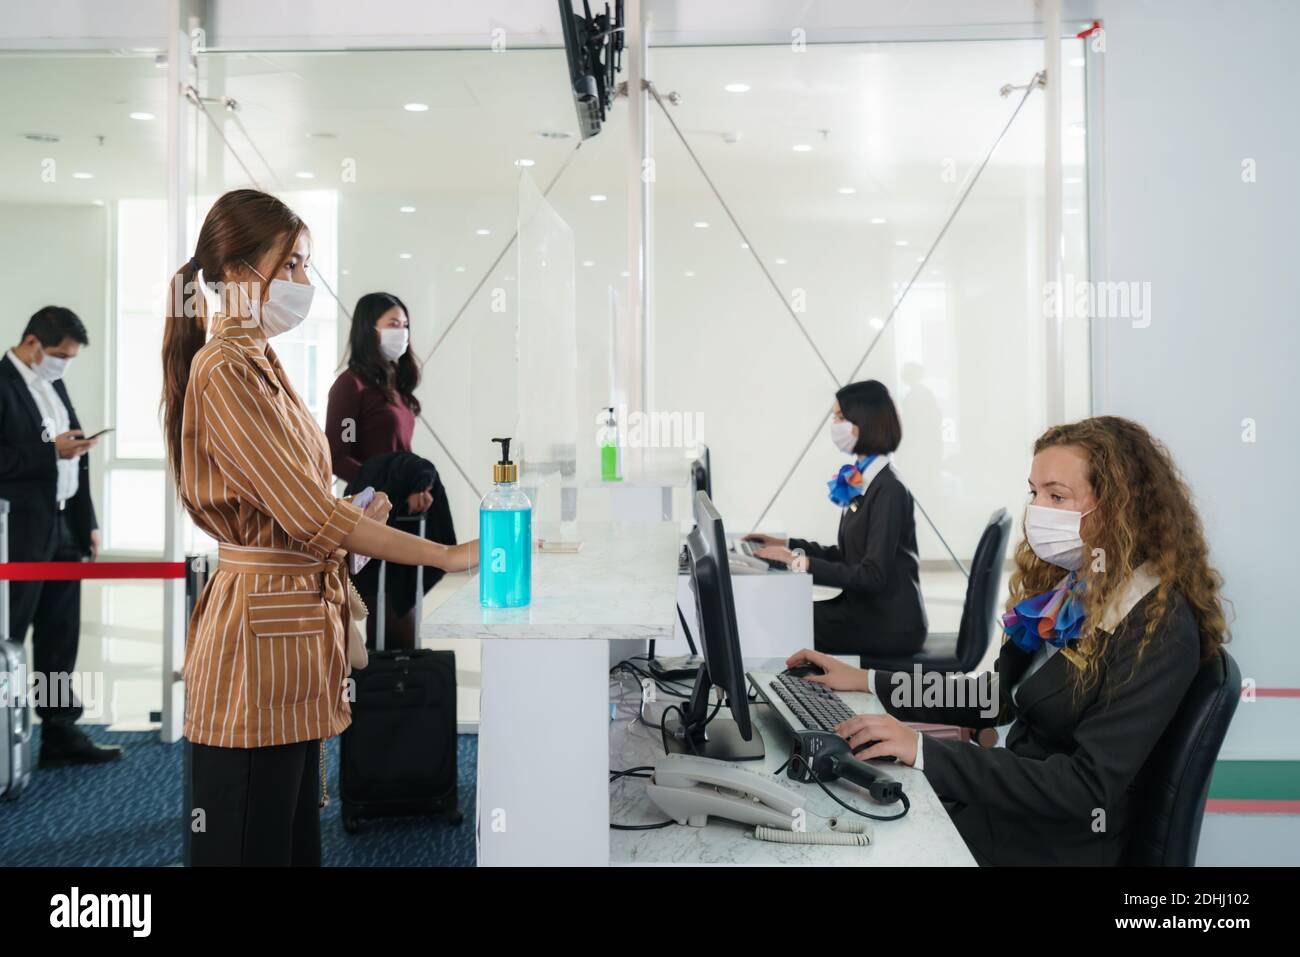 Una compagnia aerea femminile passengerwith maschera sta consegnando il suo passaporto al banco della compagnia aerea effettuare il check-in attraverso una barriera acrilica per la prevenzione delle malattie cor Foto Stock